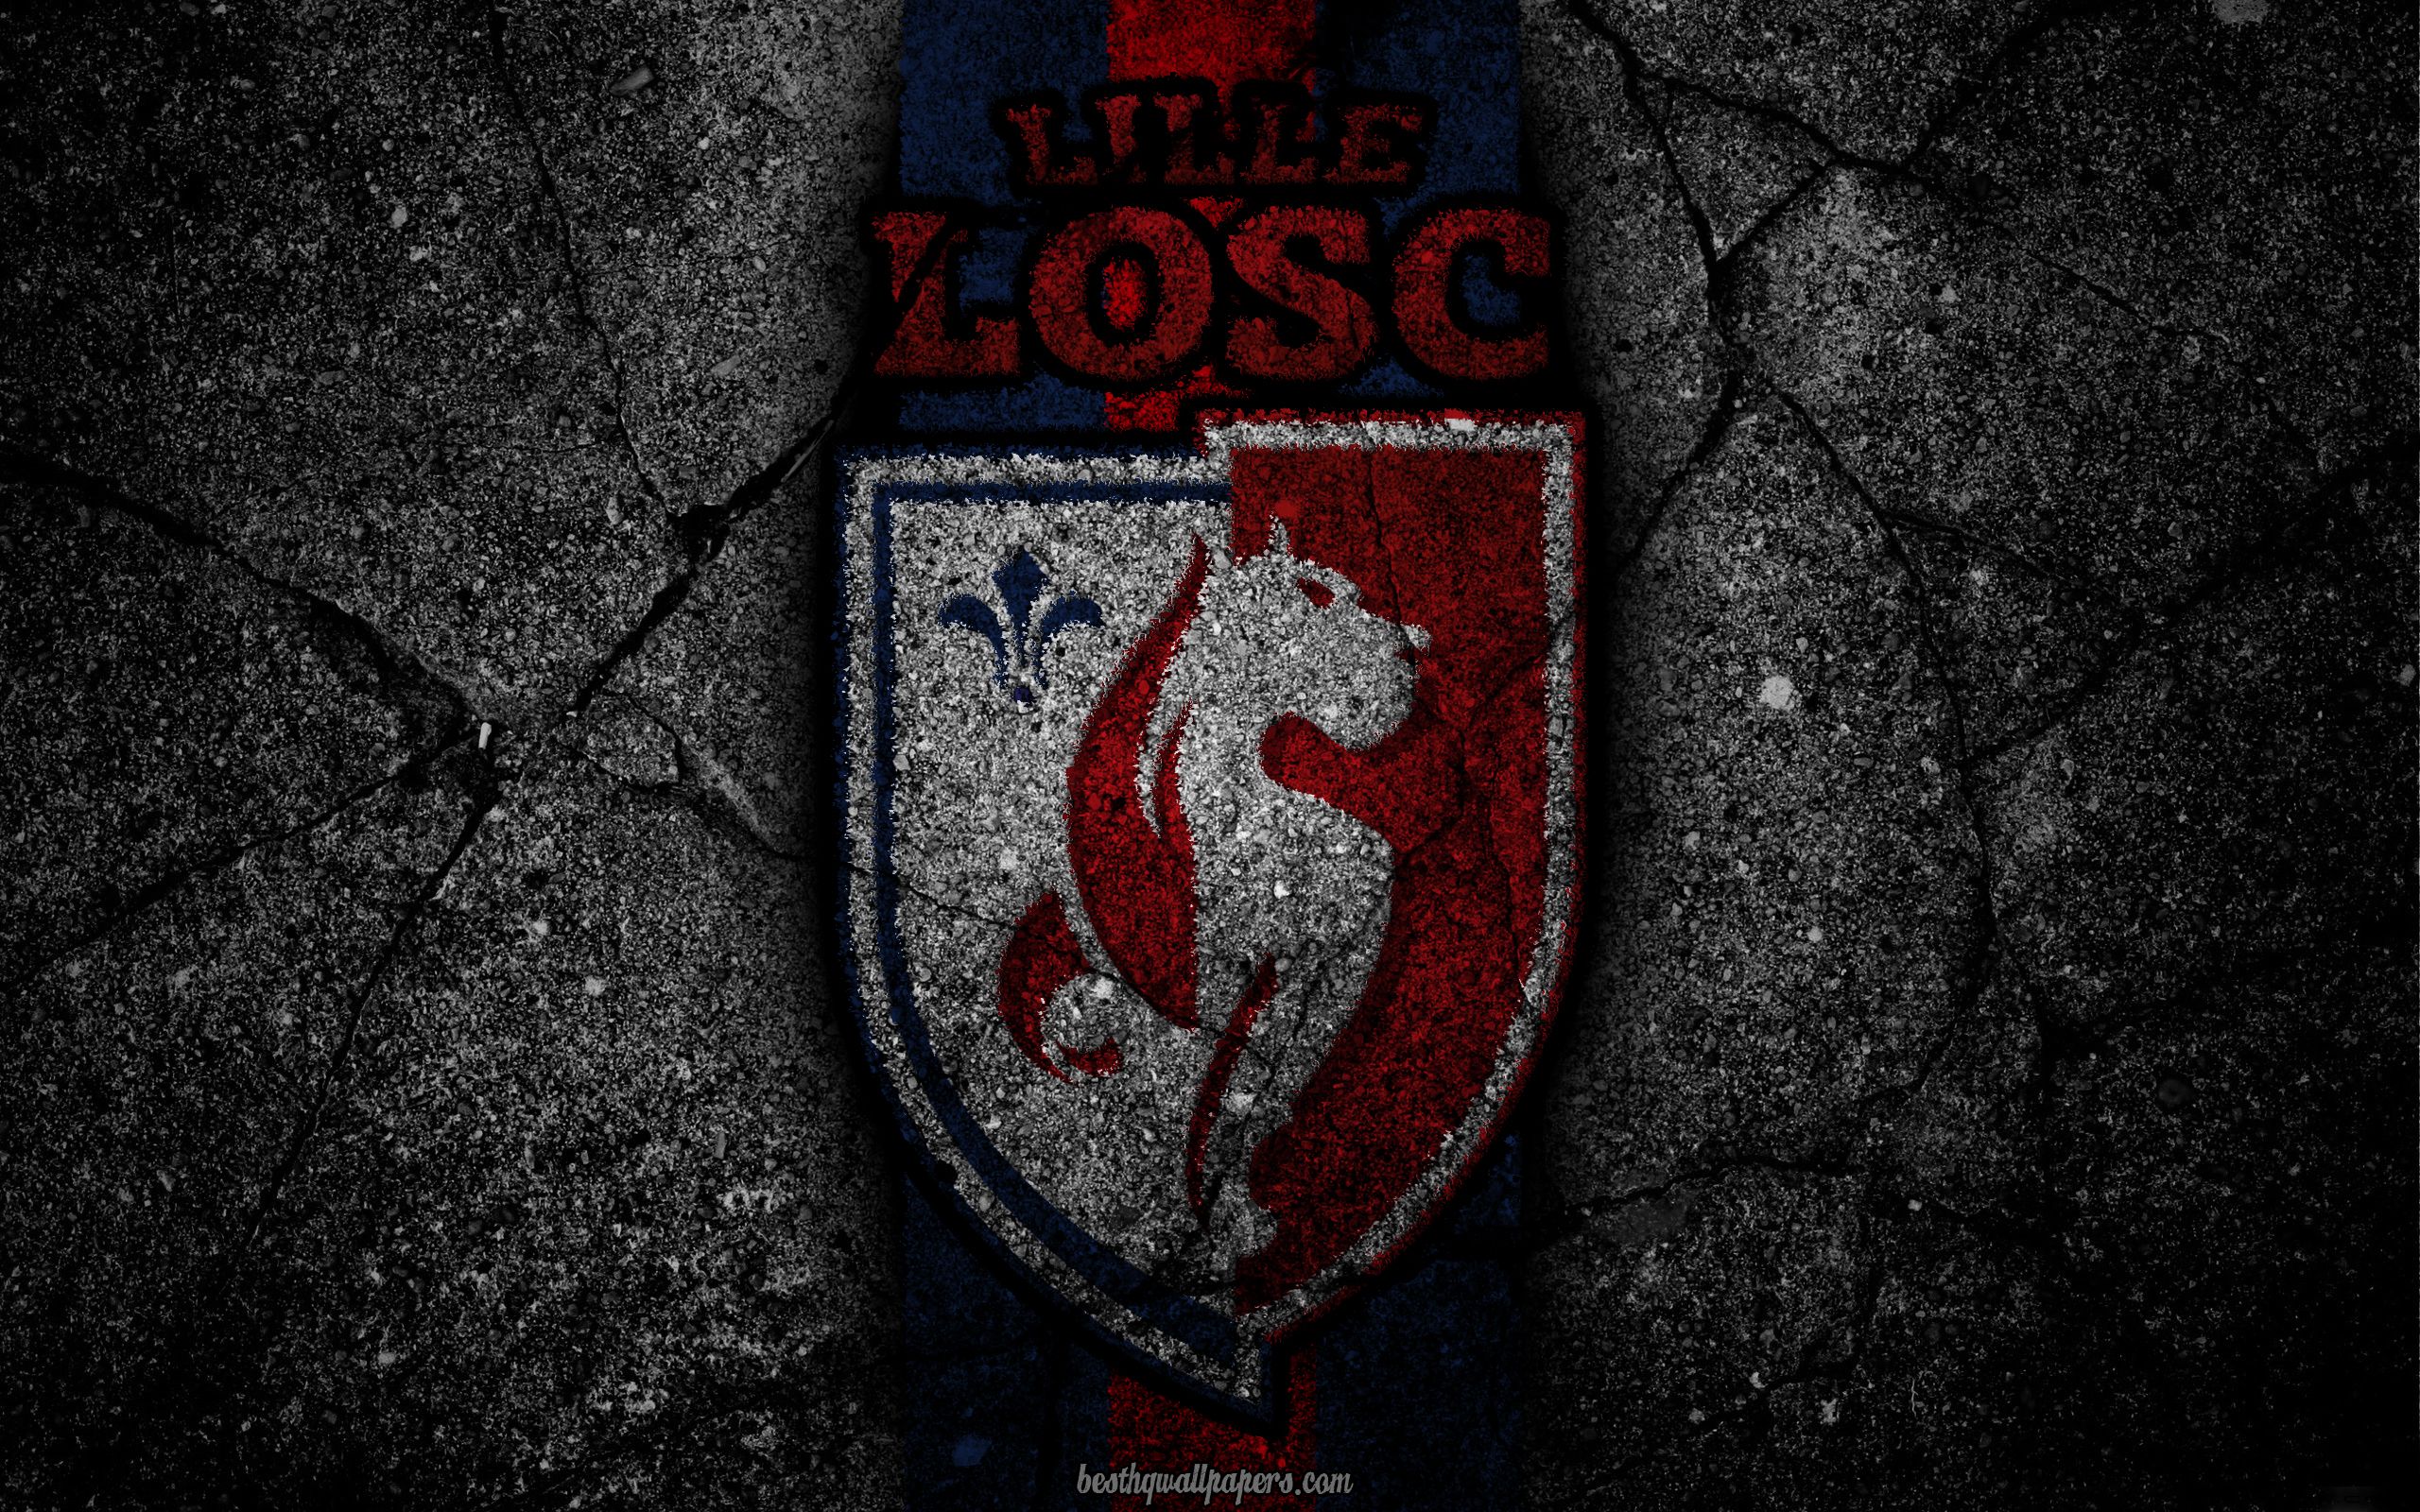 Download wallpaper Lille, logo, art, Liga soccer, Lille OSC